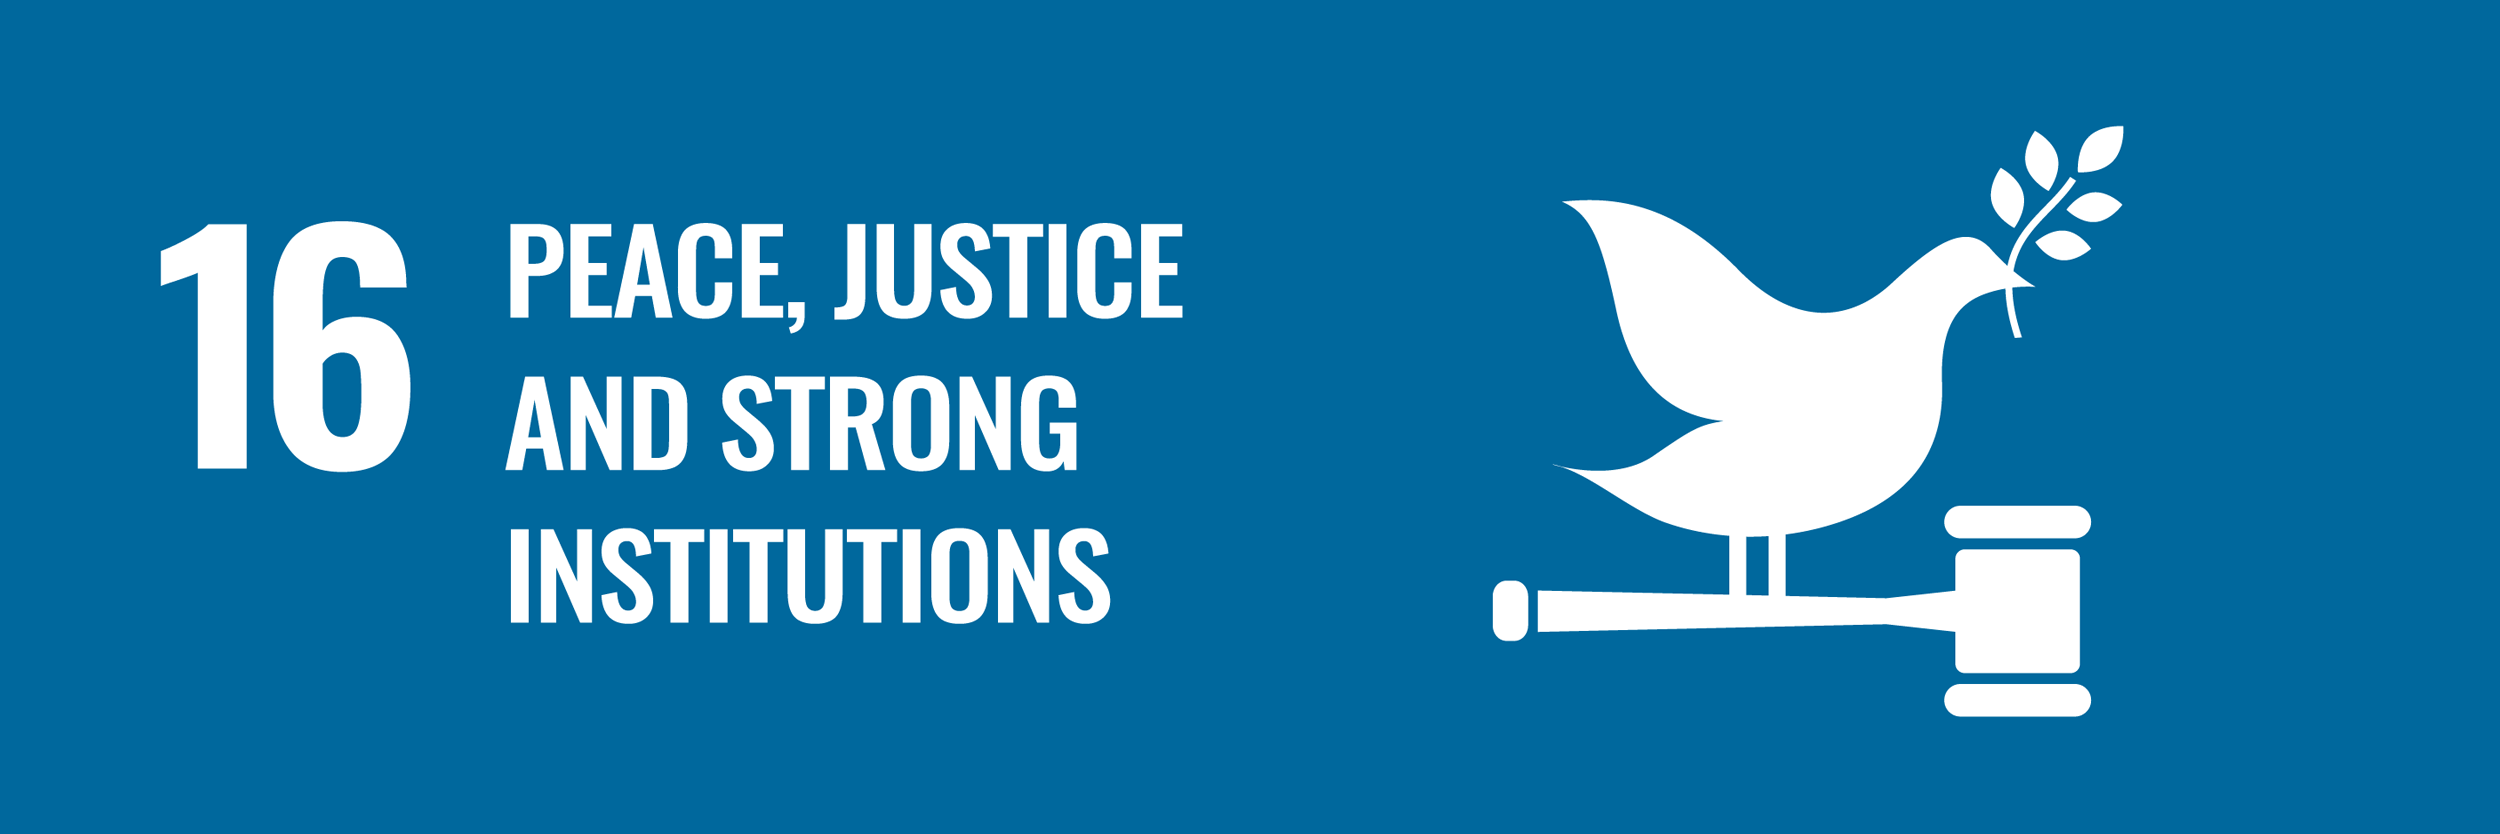 ODD 16 - paix, justice et institutions efficaces